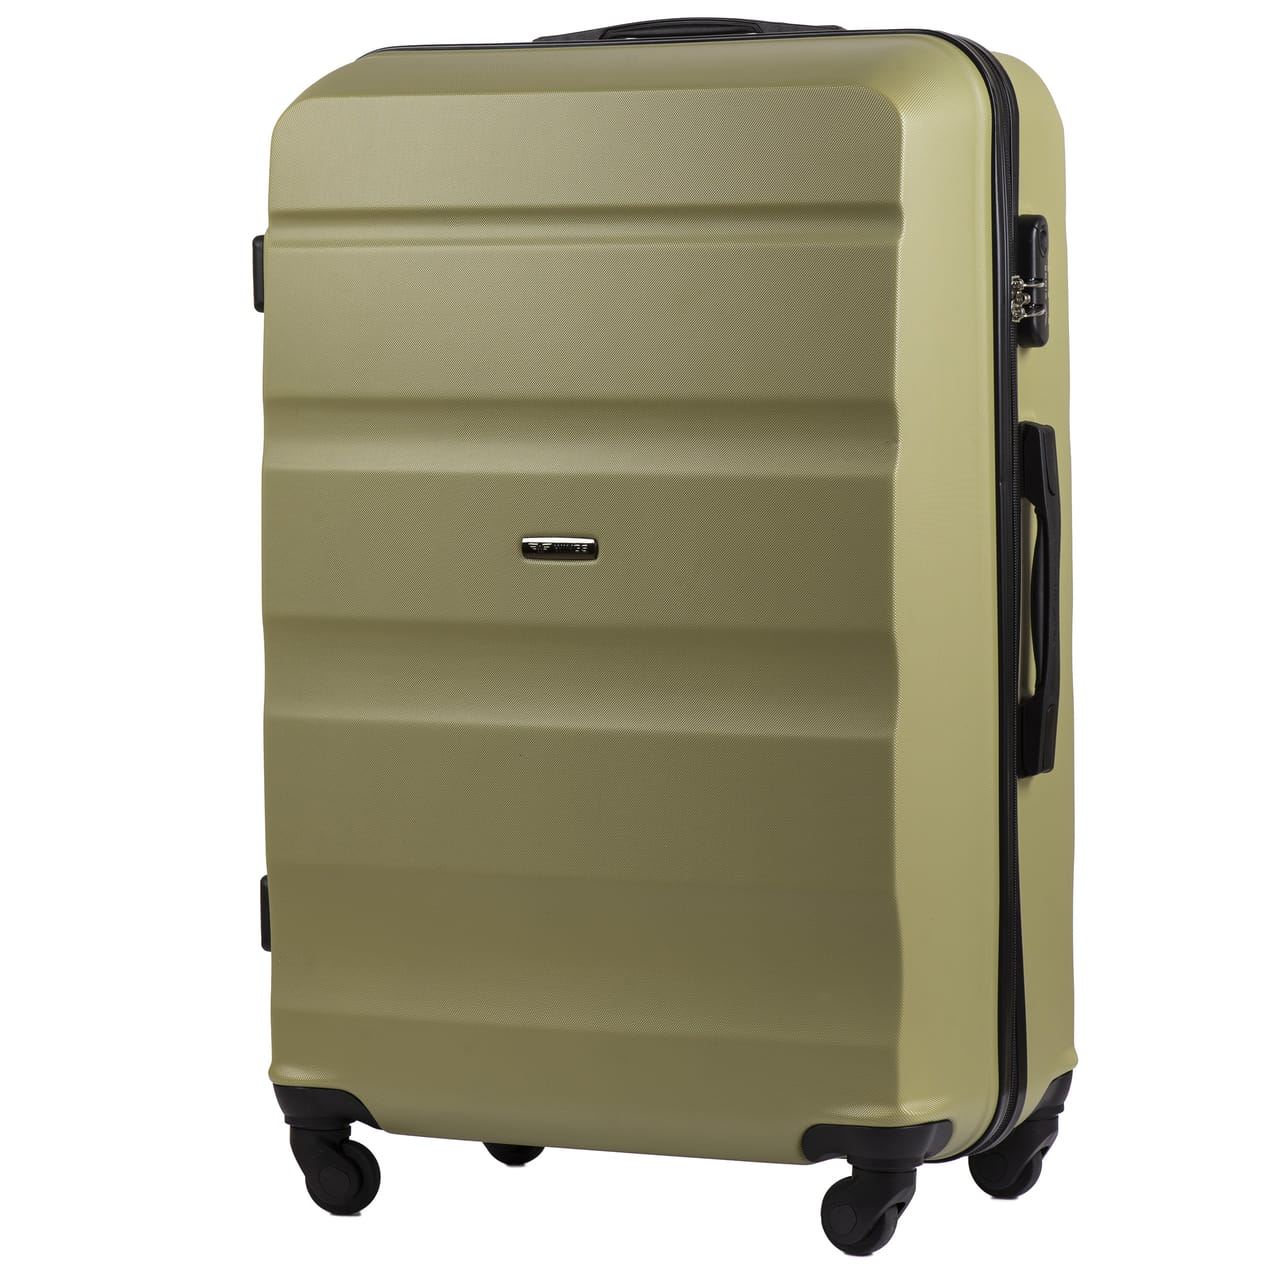 AT01-roheline-suur-reisikohver-L-ABSplastik-97l-kohvrimaailm-kuljelt.jpg